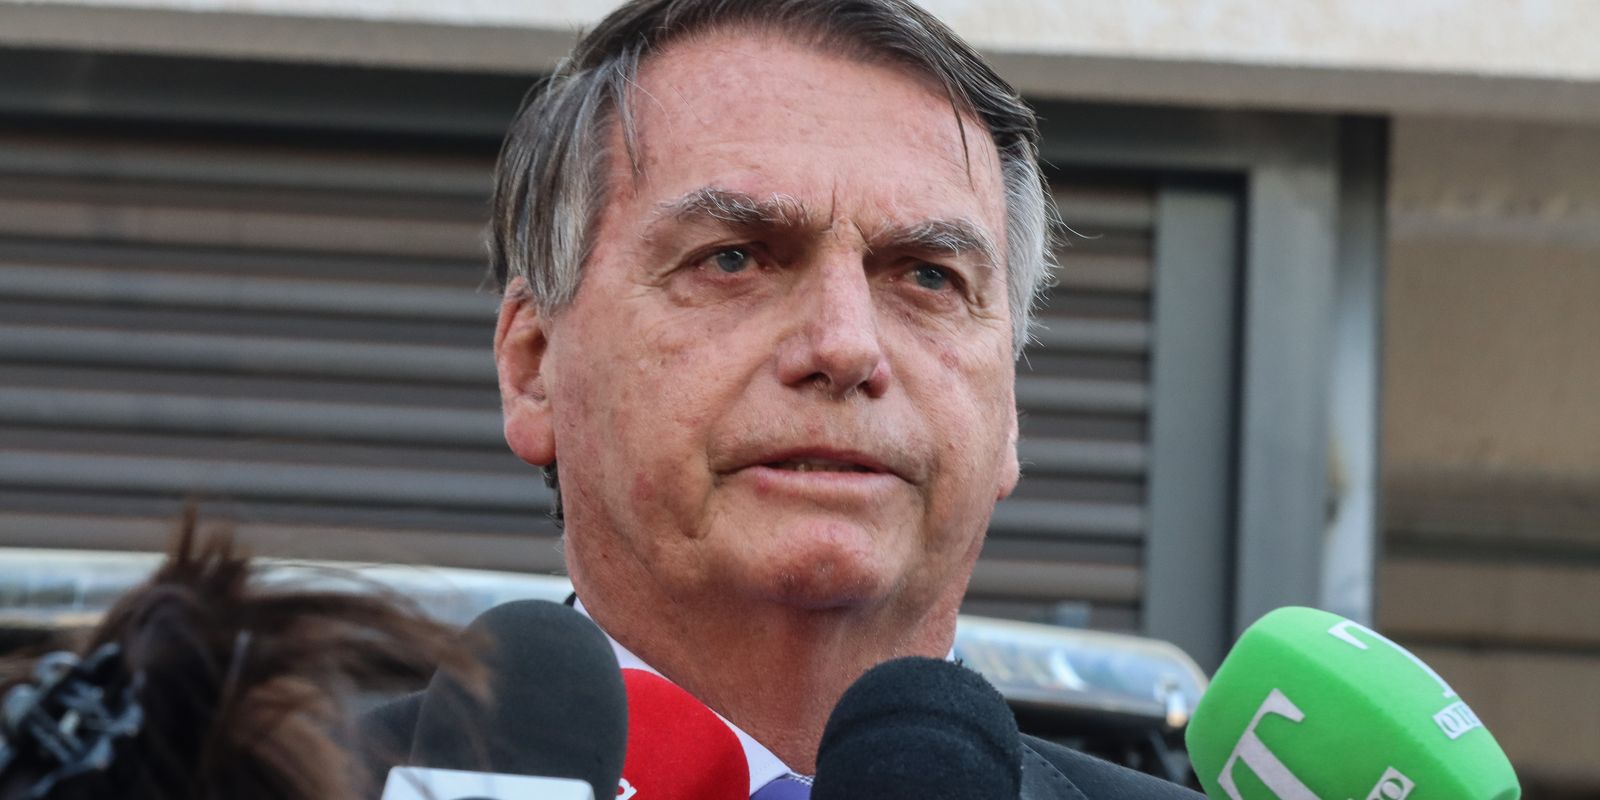 Bolsonaro discutiu minuta de golpe que previa prender Moraes, diz PF